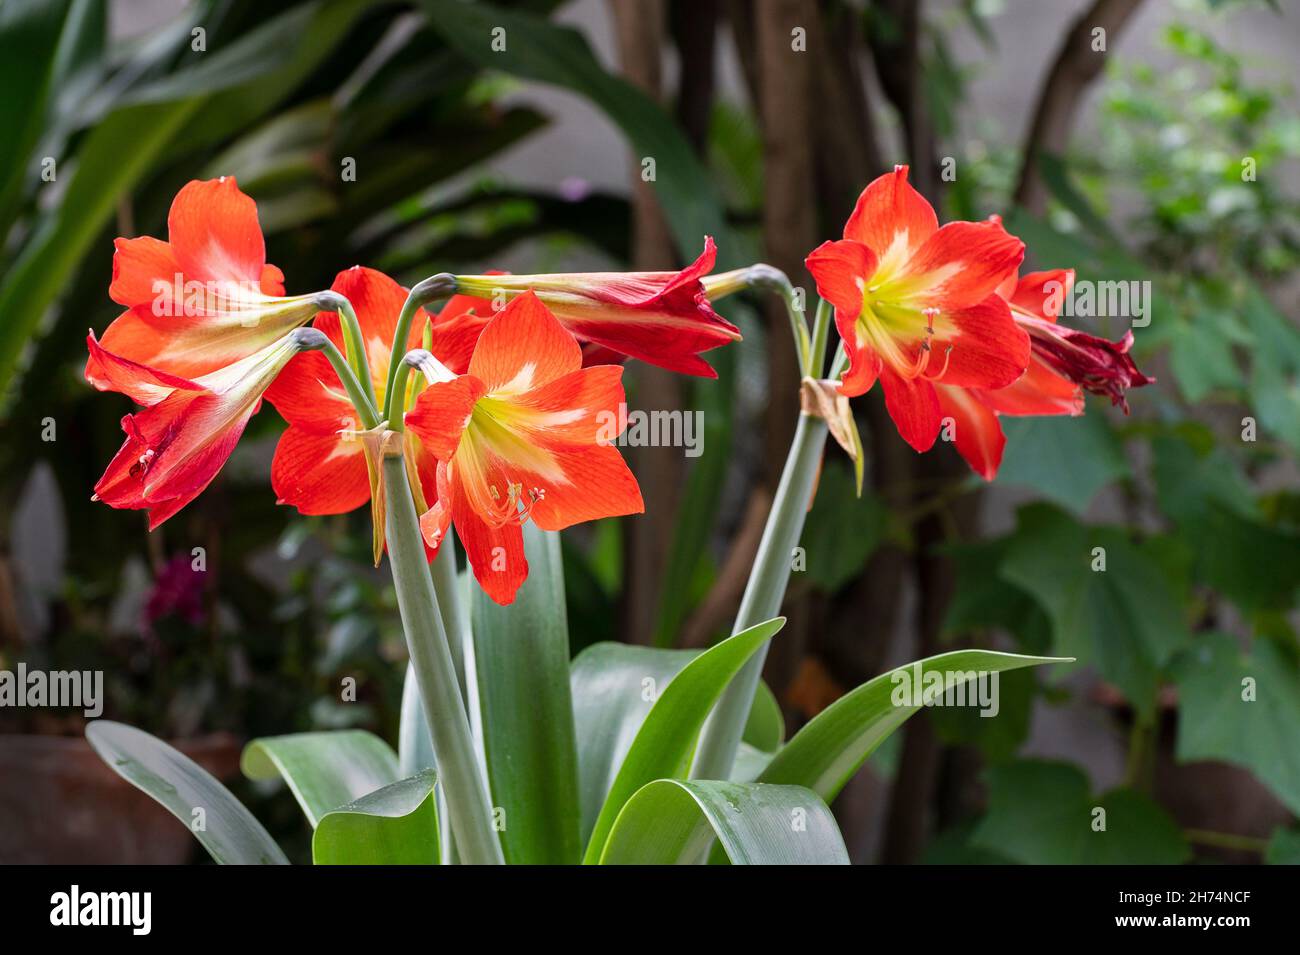 Blühende Orange Lily Blumen, Lilium ist eine Gattung von krautigen blühenden Pflanzen, die aus Zwiebeln wachsen, alle mit großen prominenten Blüten. Geschossen in Howrah, W Stockfoto